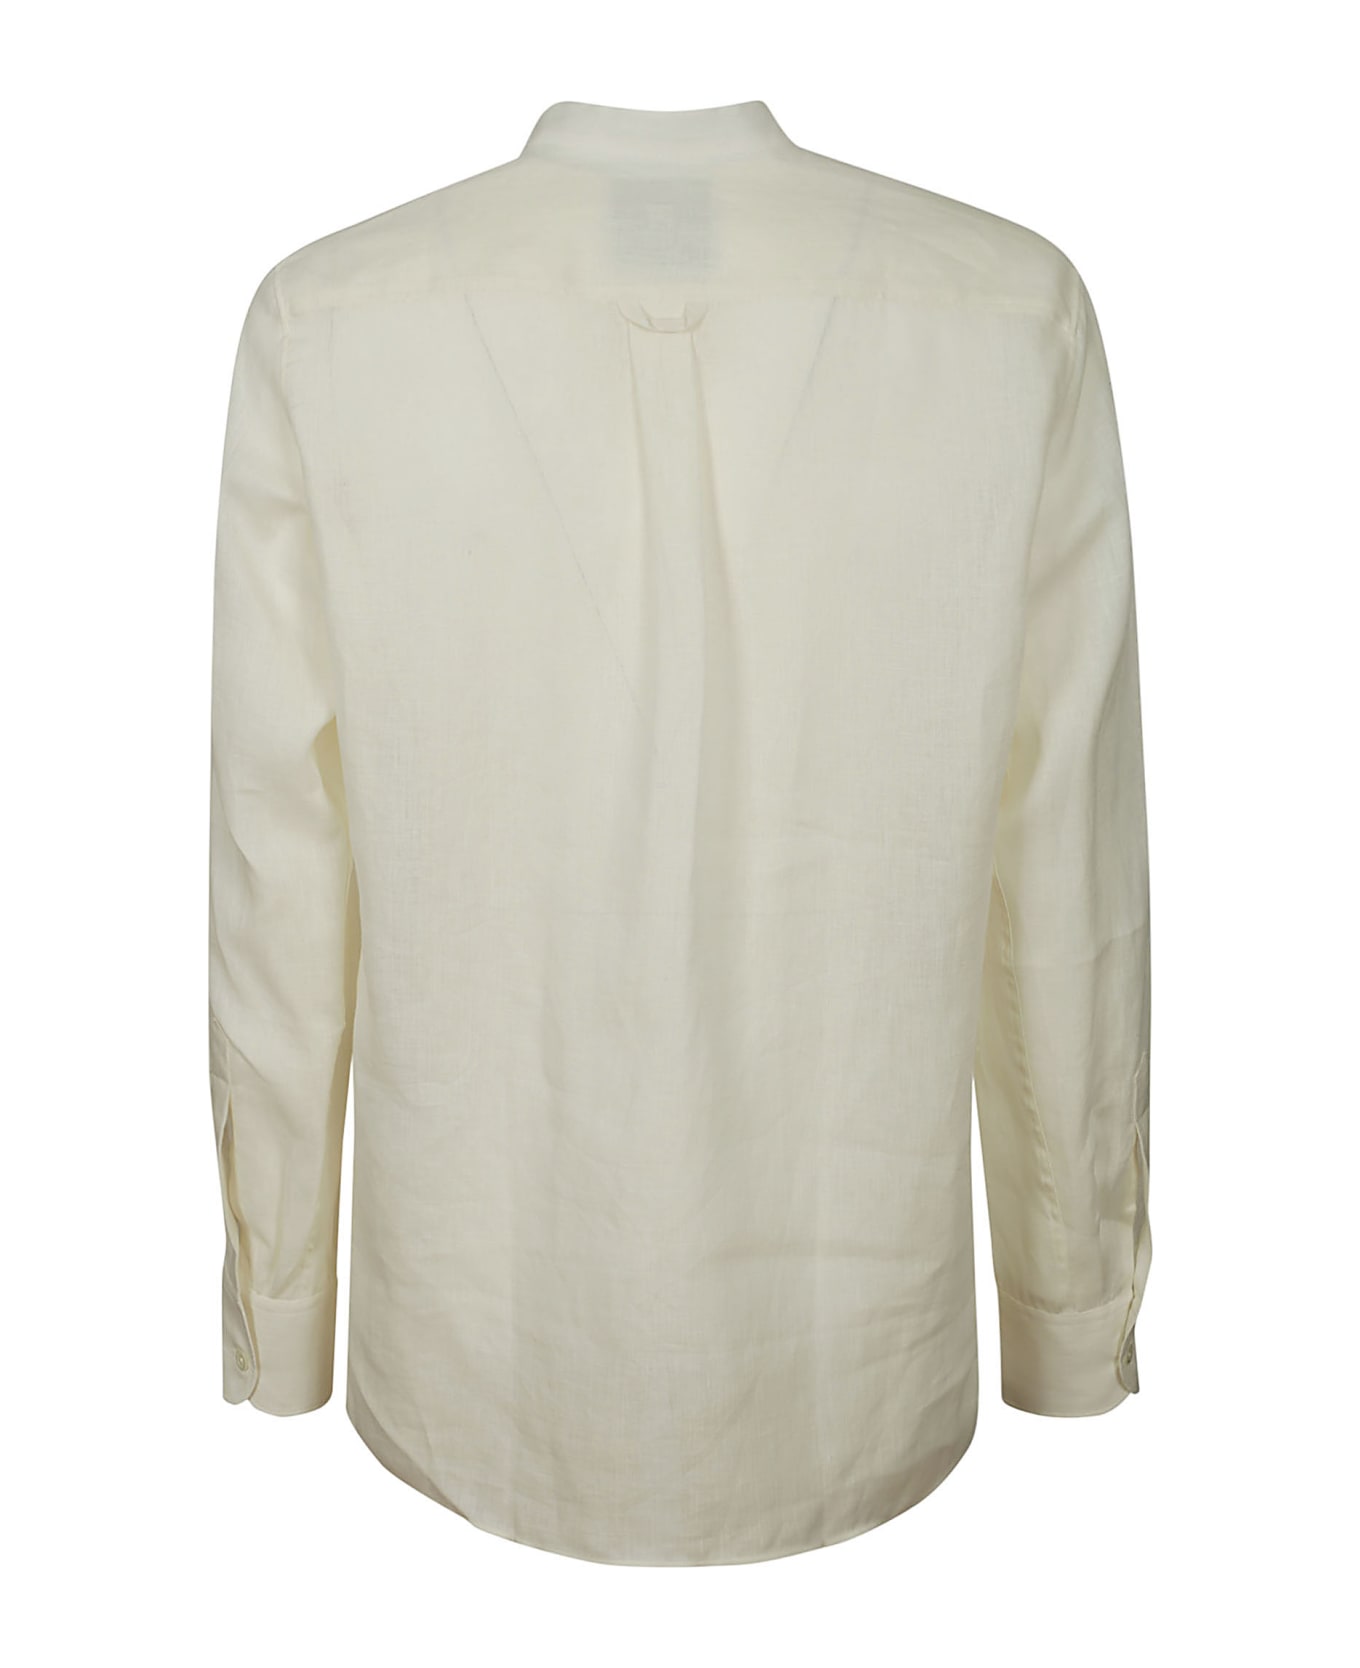 PT01 Serafino Shirt - White